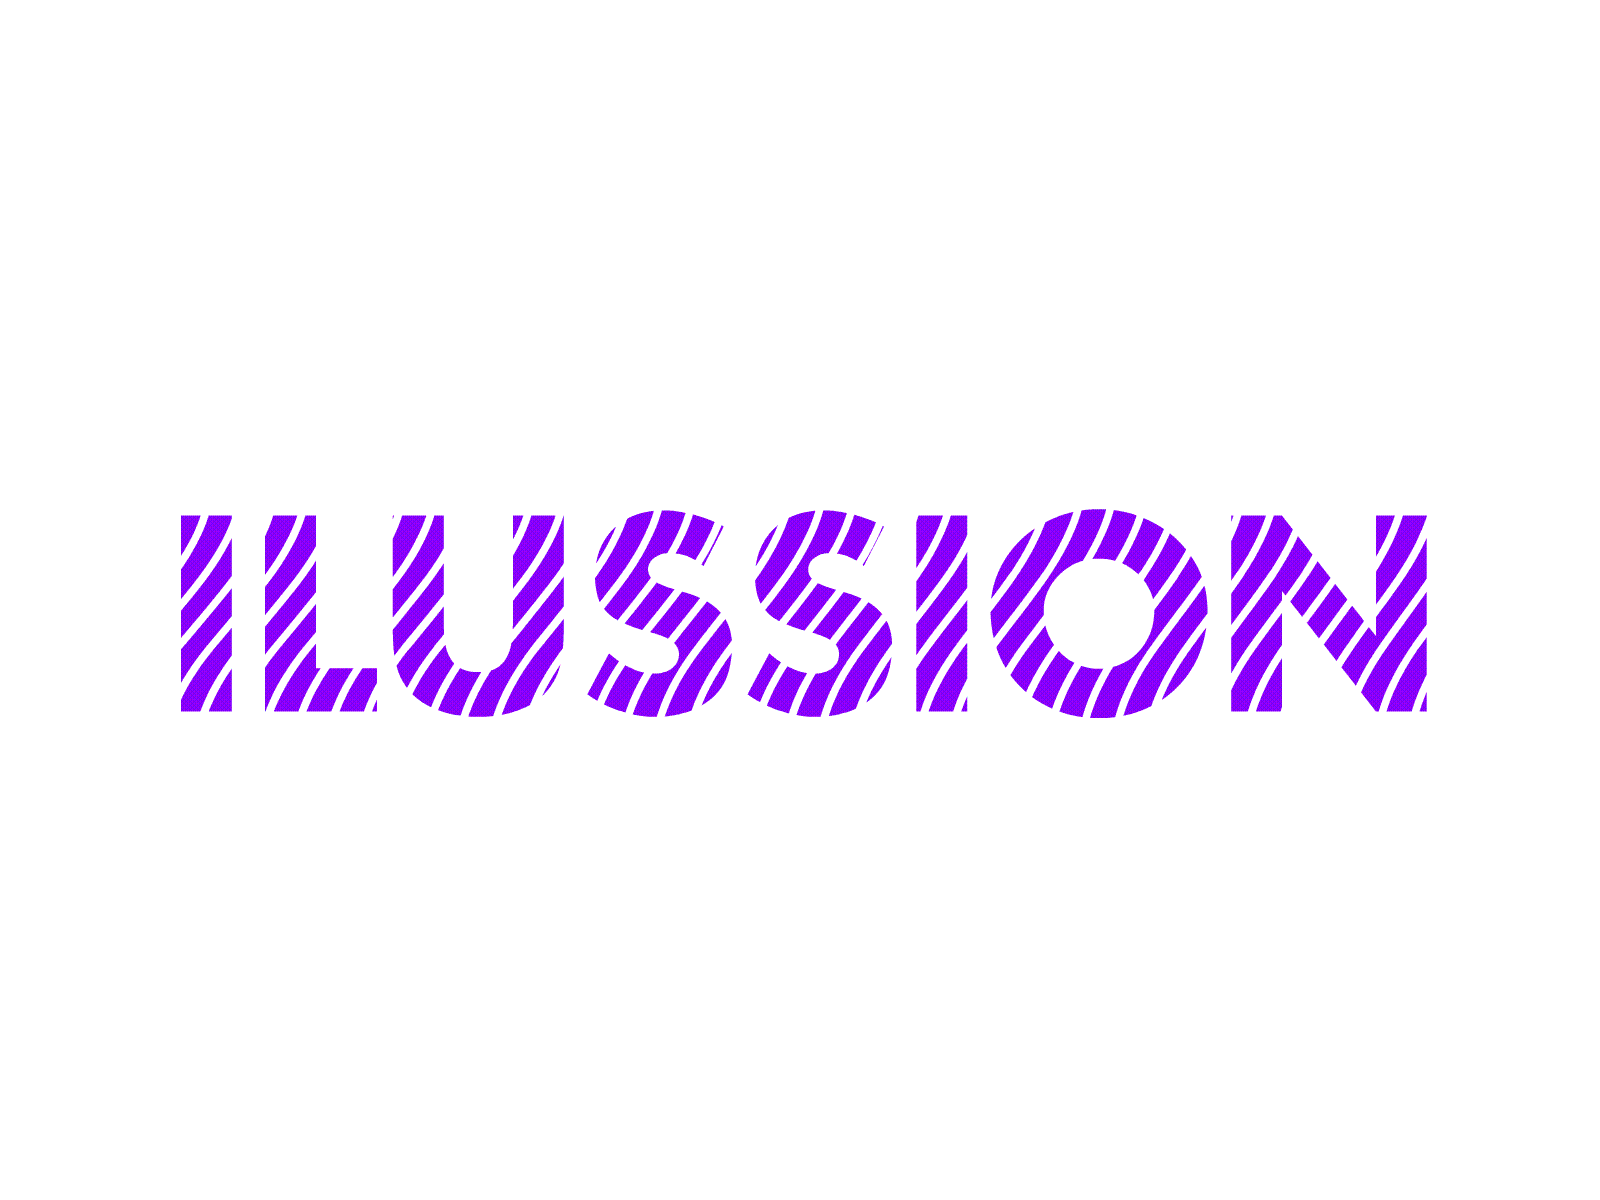 Optical Illusion animation fun optical illusion